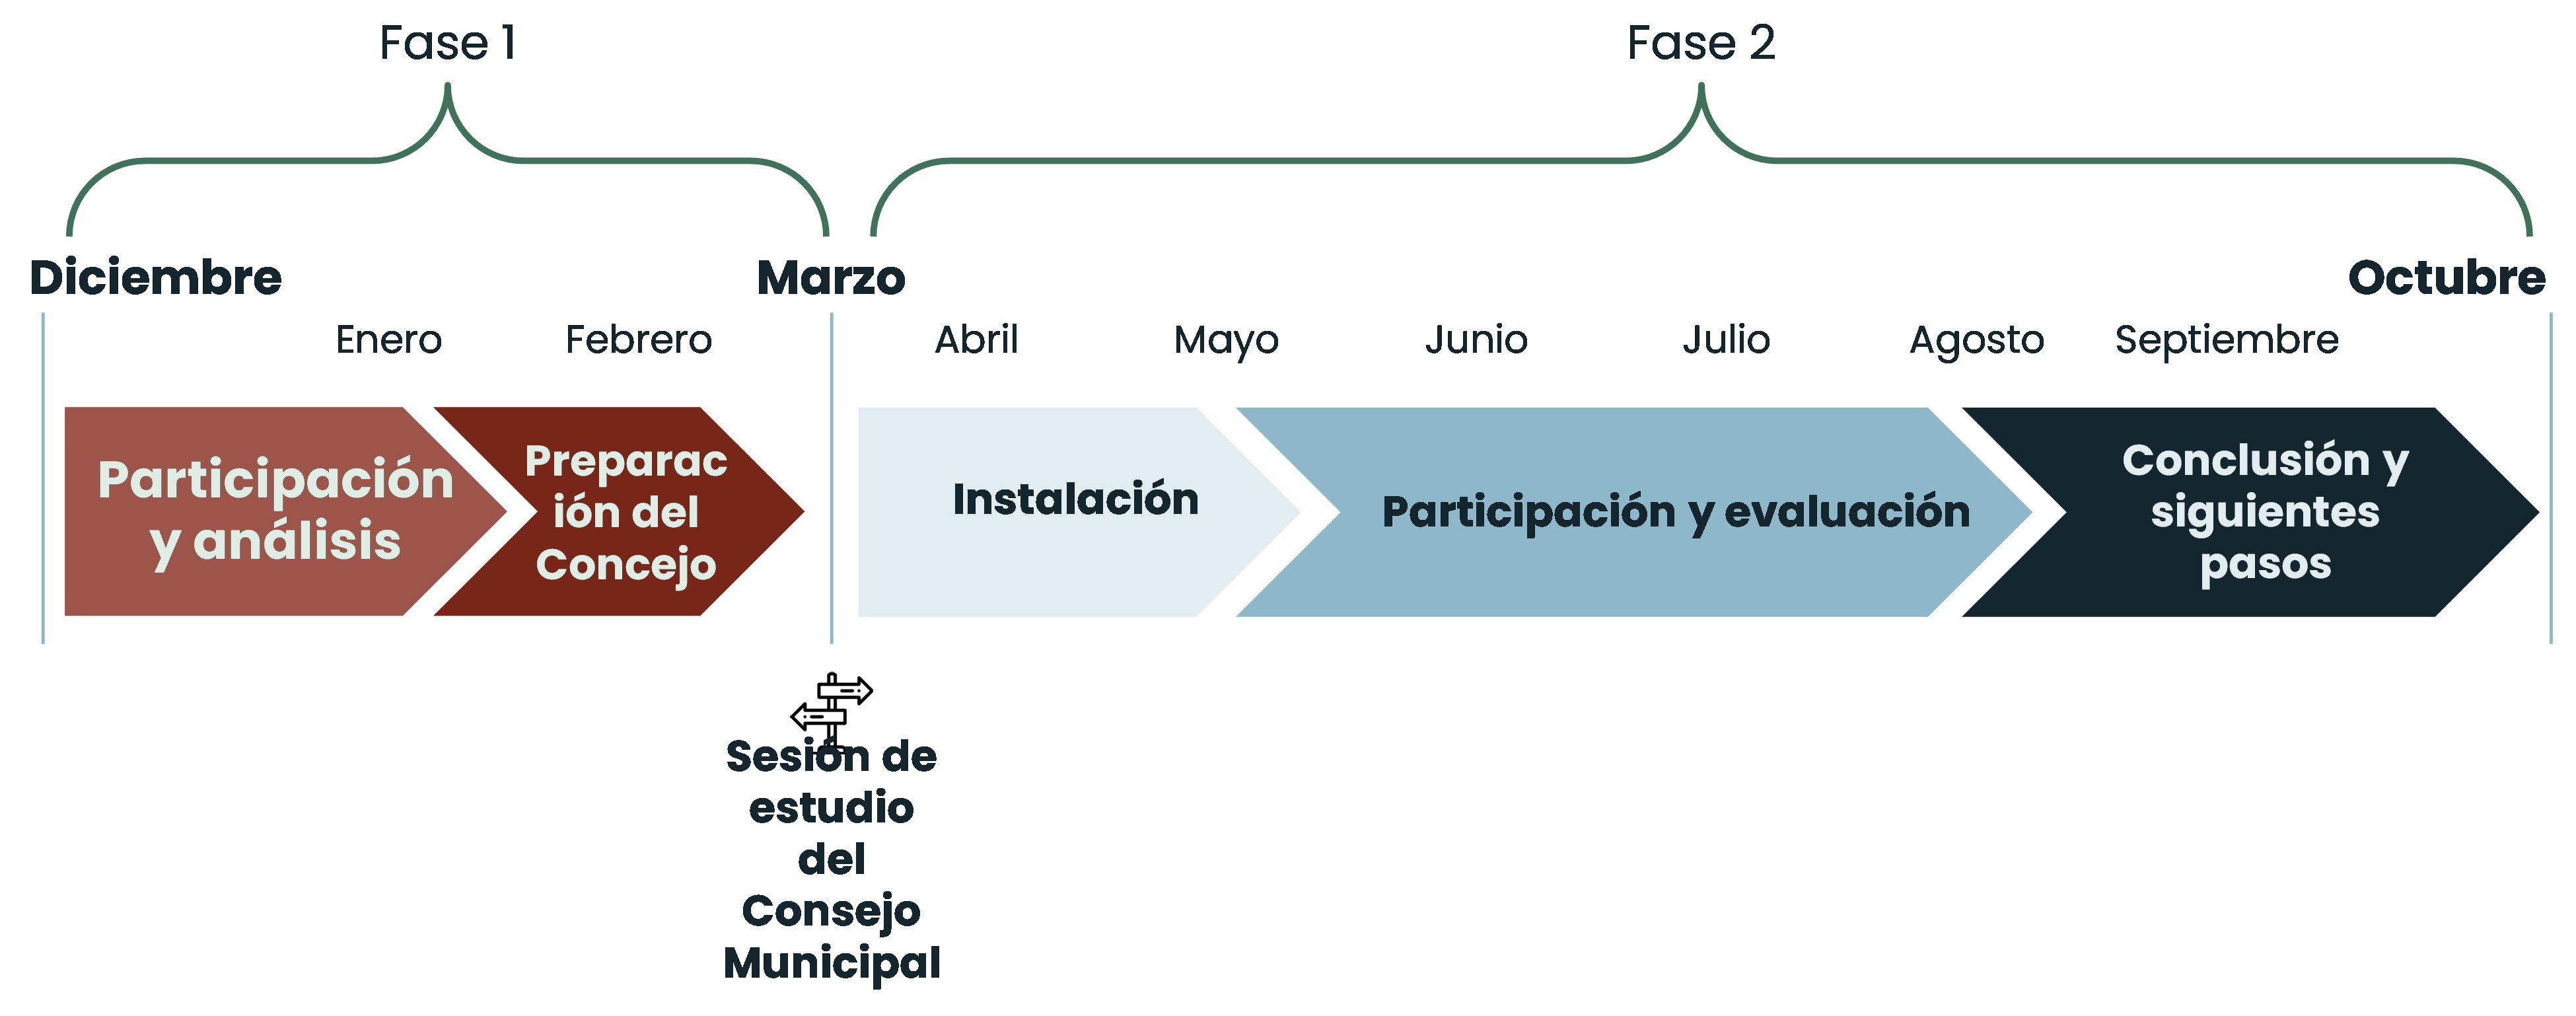 A Spanish timeline of engagement / Una cronología española de participación comunitaria